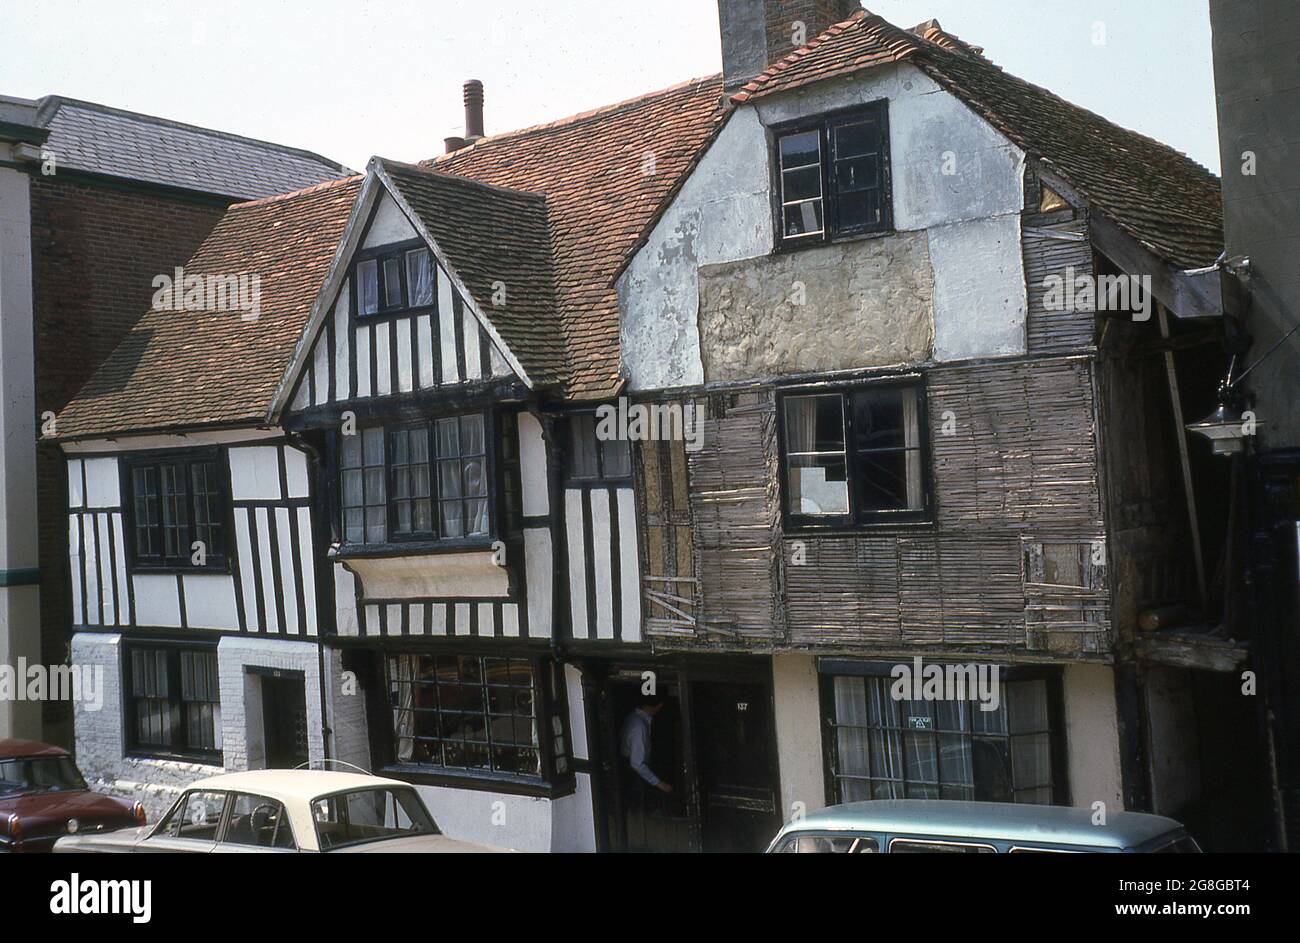 1975, vue extérieure de cette époque d'un ancien bâtiment historique Tudor en cours de réparation, 137 All Saints Street dans la vieille ville de Hastings, East Sussex, Angleterre, Royaume-Uni. Les maisons à pans de bois sont sensibles aux ravages du temps et du temps, mais des bâtiments anciens, les maisons médiévales et Tudor sont quelques-unes des plus anciennes maisons encore en vie. Banque D'Images